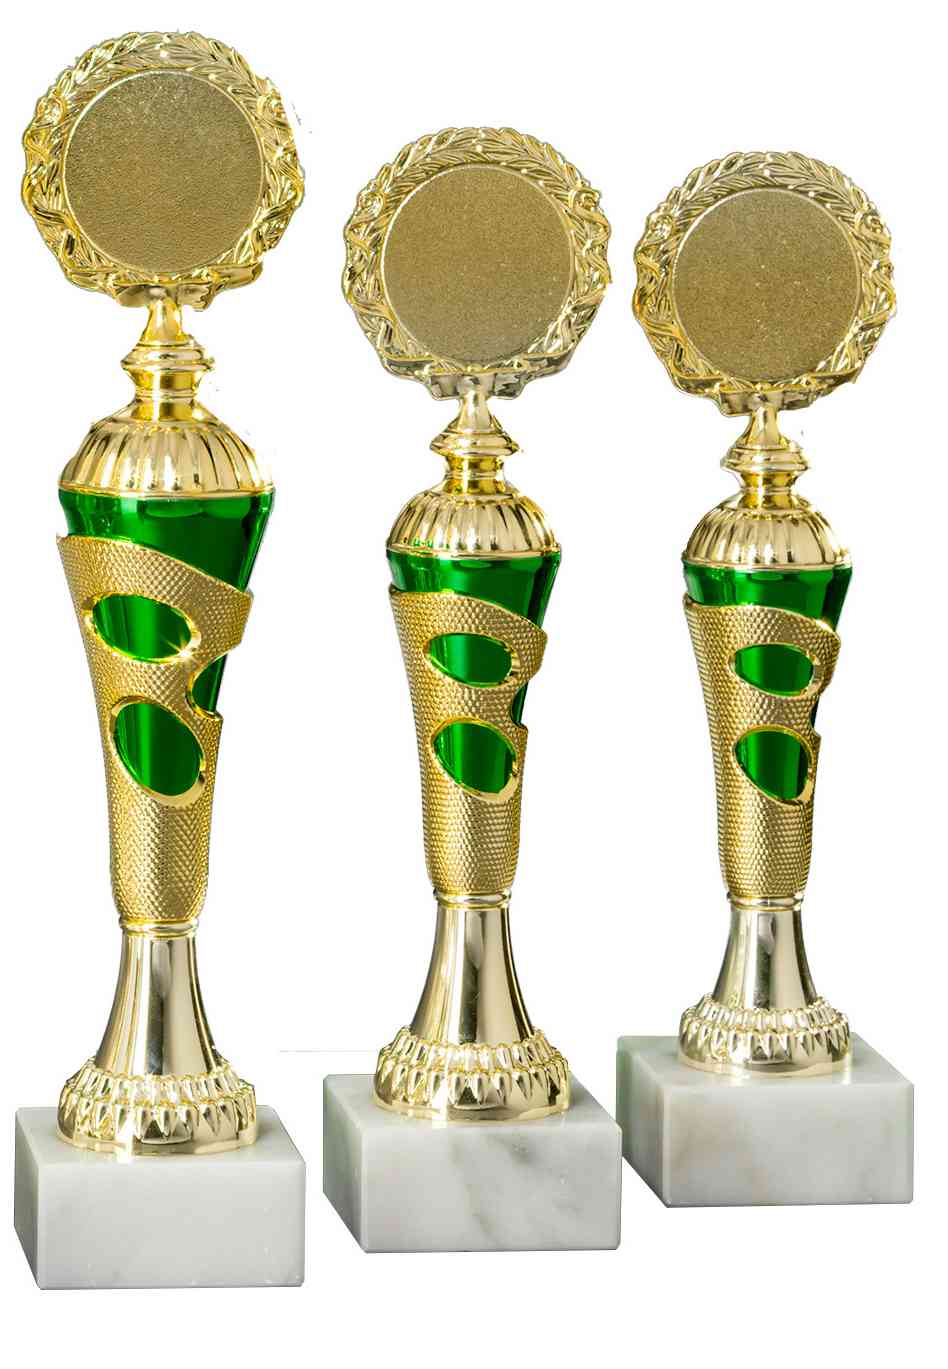 Drei goldene Pokale Böblingen 3- er Pokalserie 255 mm – 290 mm PK754700-3-E50 mit grünen Details auf Marmorsockeln, isoliert auf weißem Hintergrund.